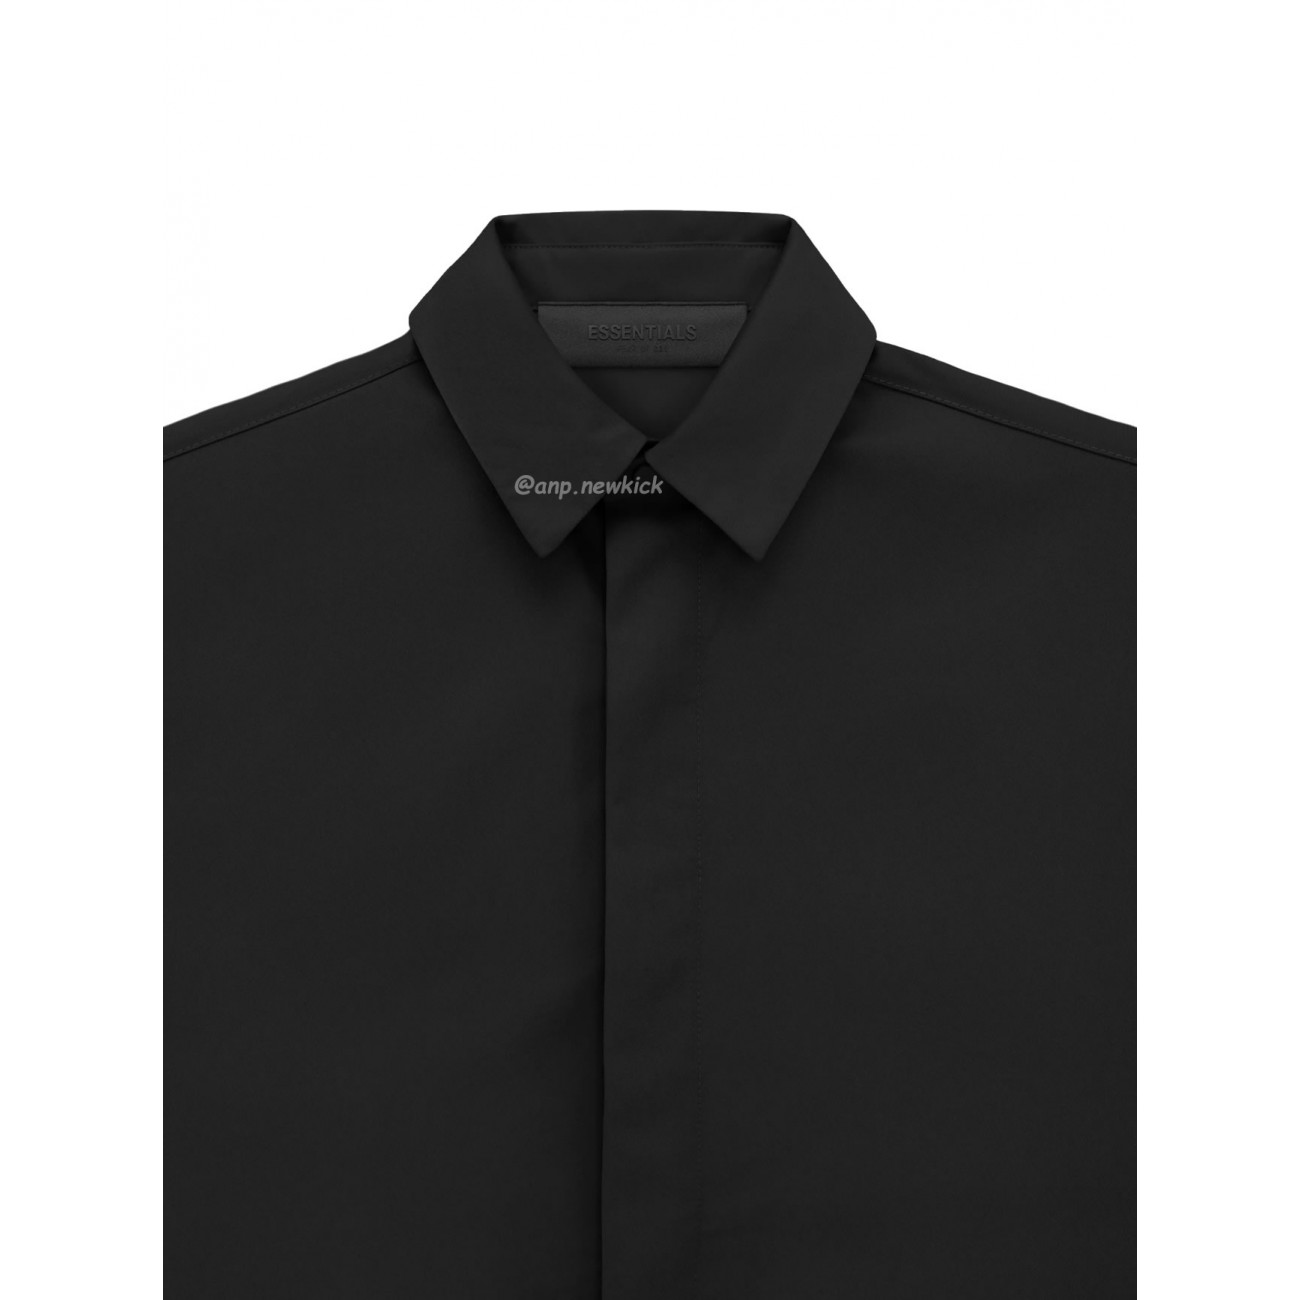 FEAR OF GOD ESSENTIALS FOG 23FW Tie cuffed shirt black apricot gray S-XL